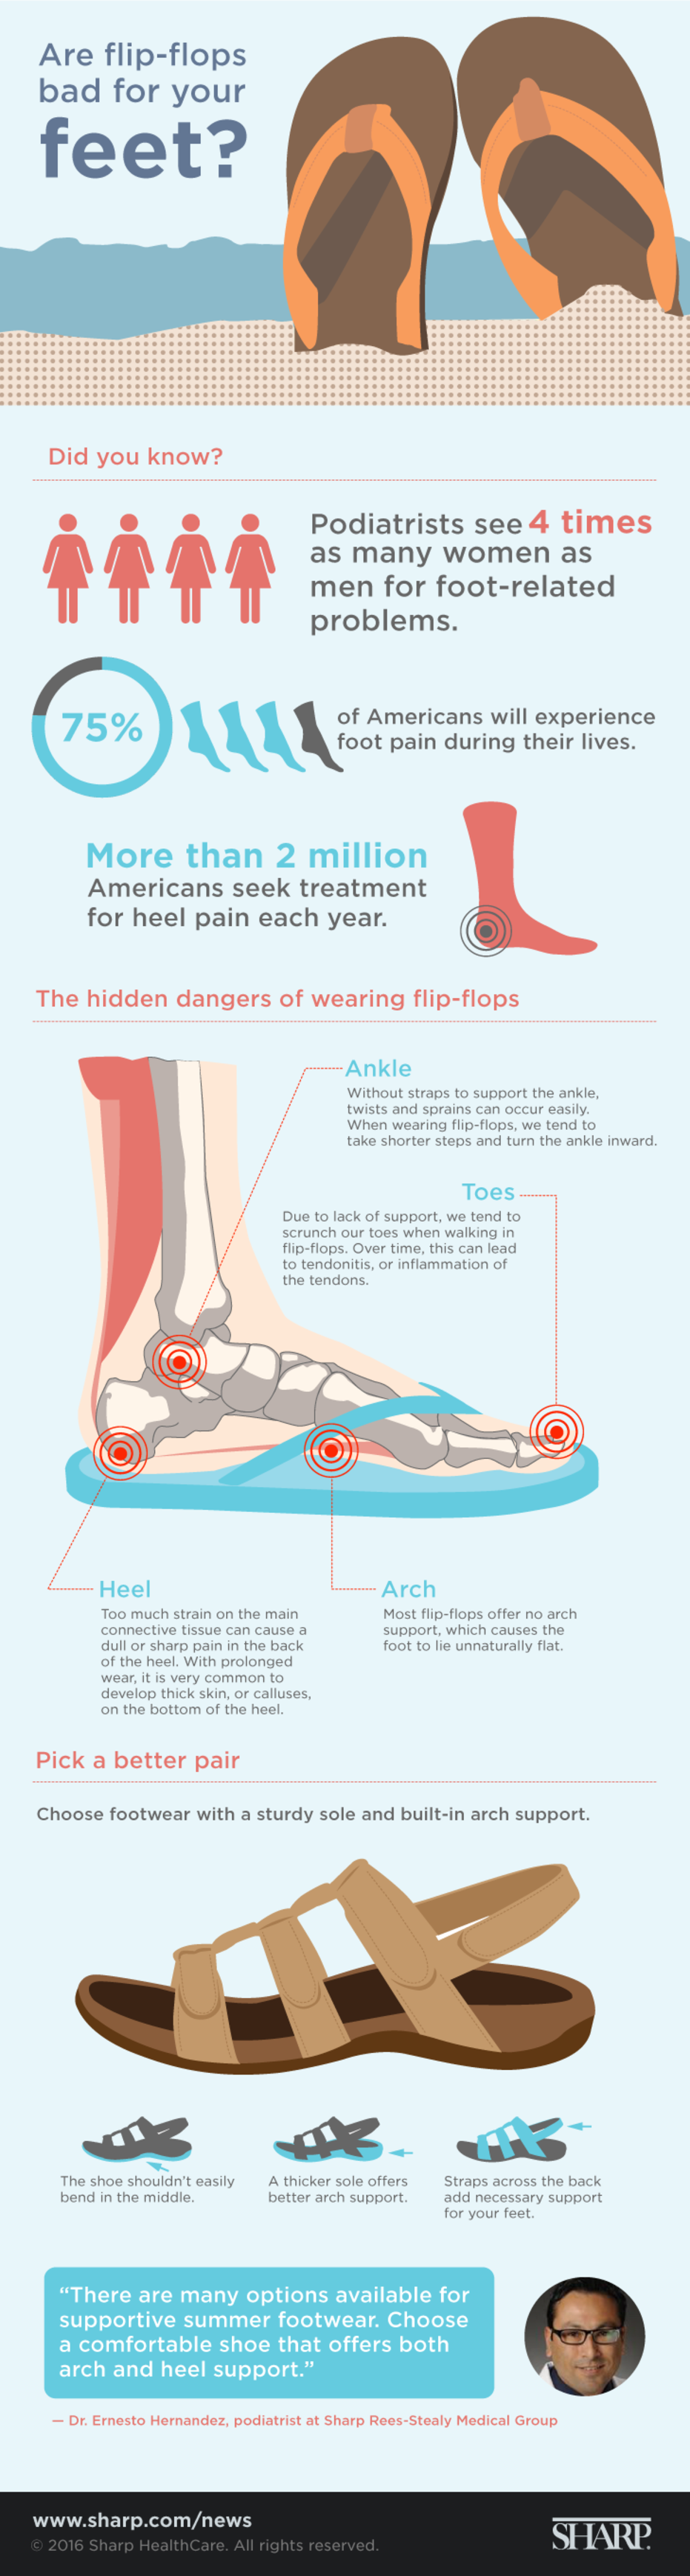 Illustration of flip-flops